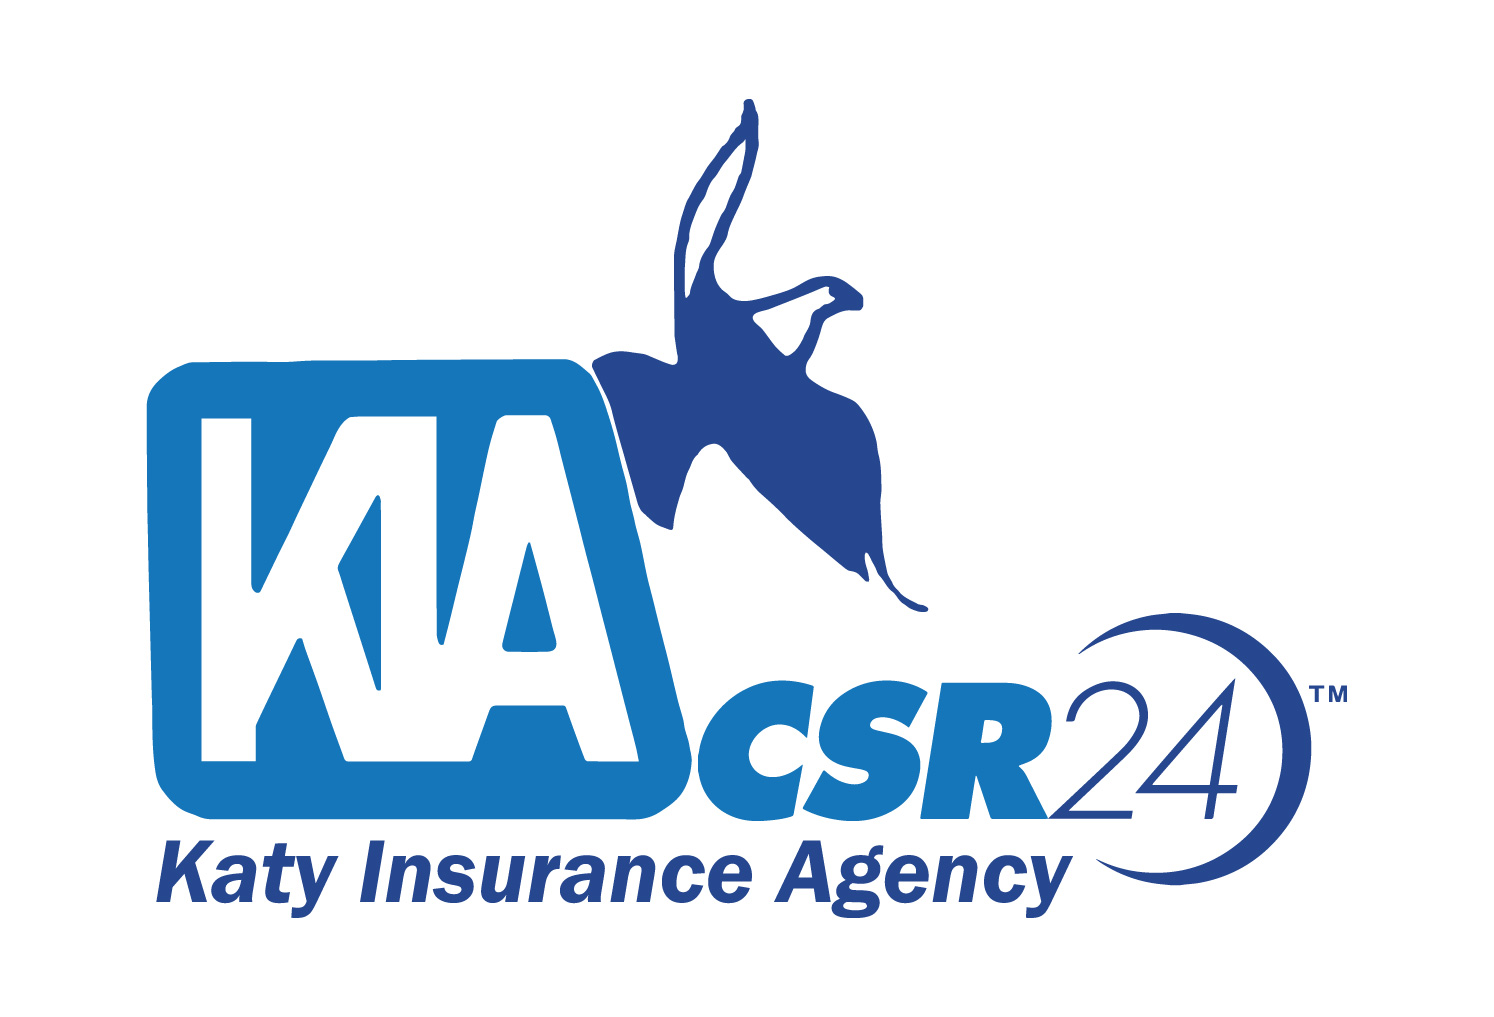 Katy Insurance Agency, Inc